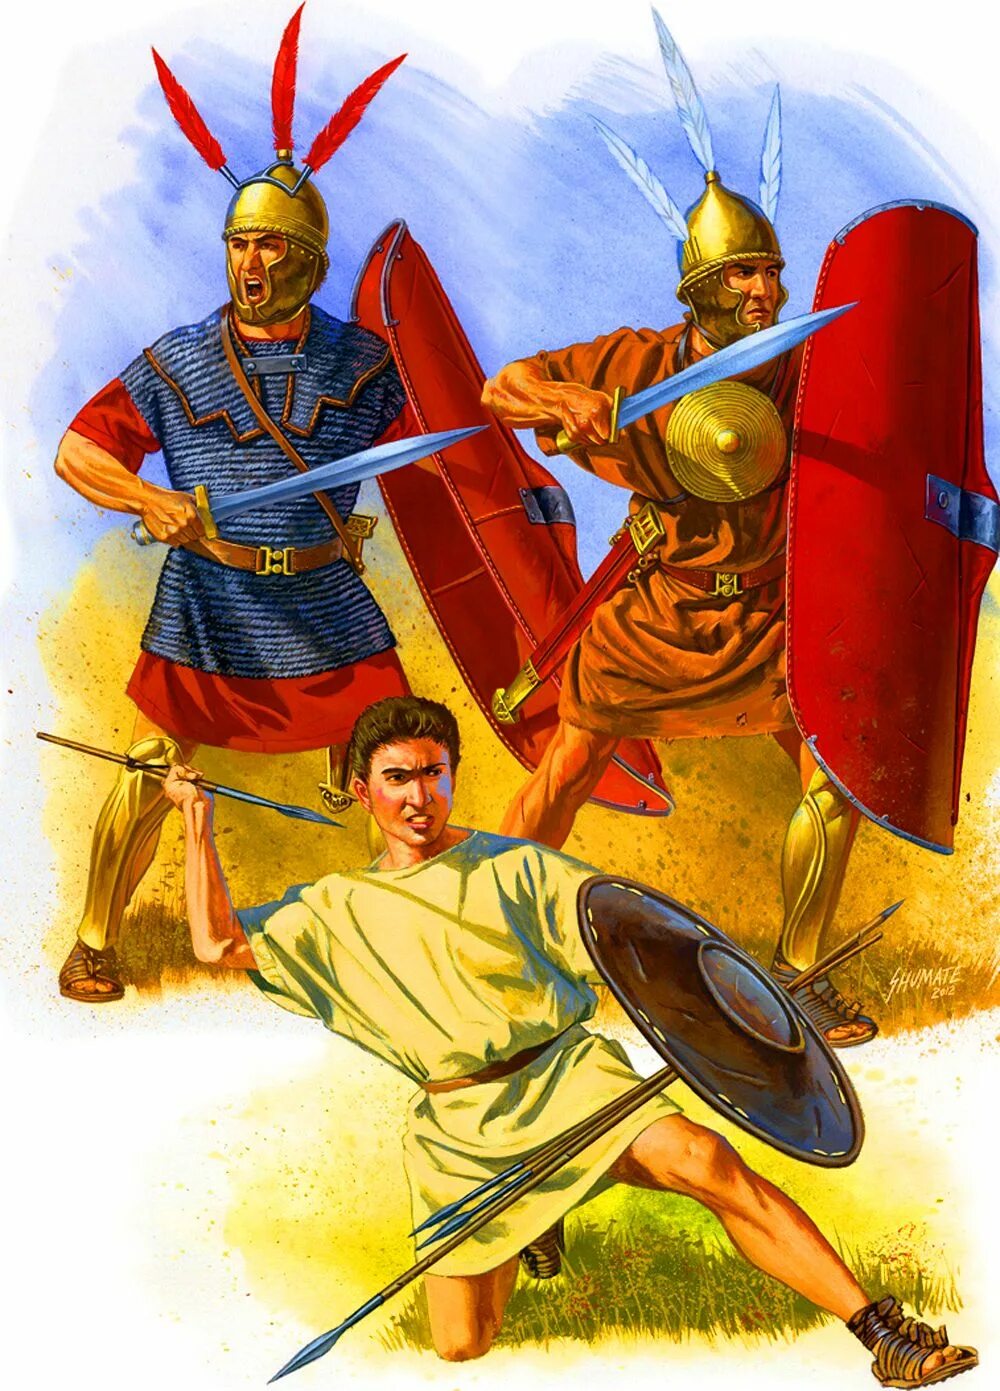 Воин тяжелой пехоты в древнем риме. Римские легионеры Пунические войны. Римский солдат времен Пунических войн. Johnny Shumate художник римляне.